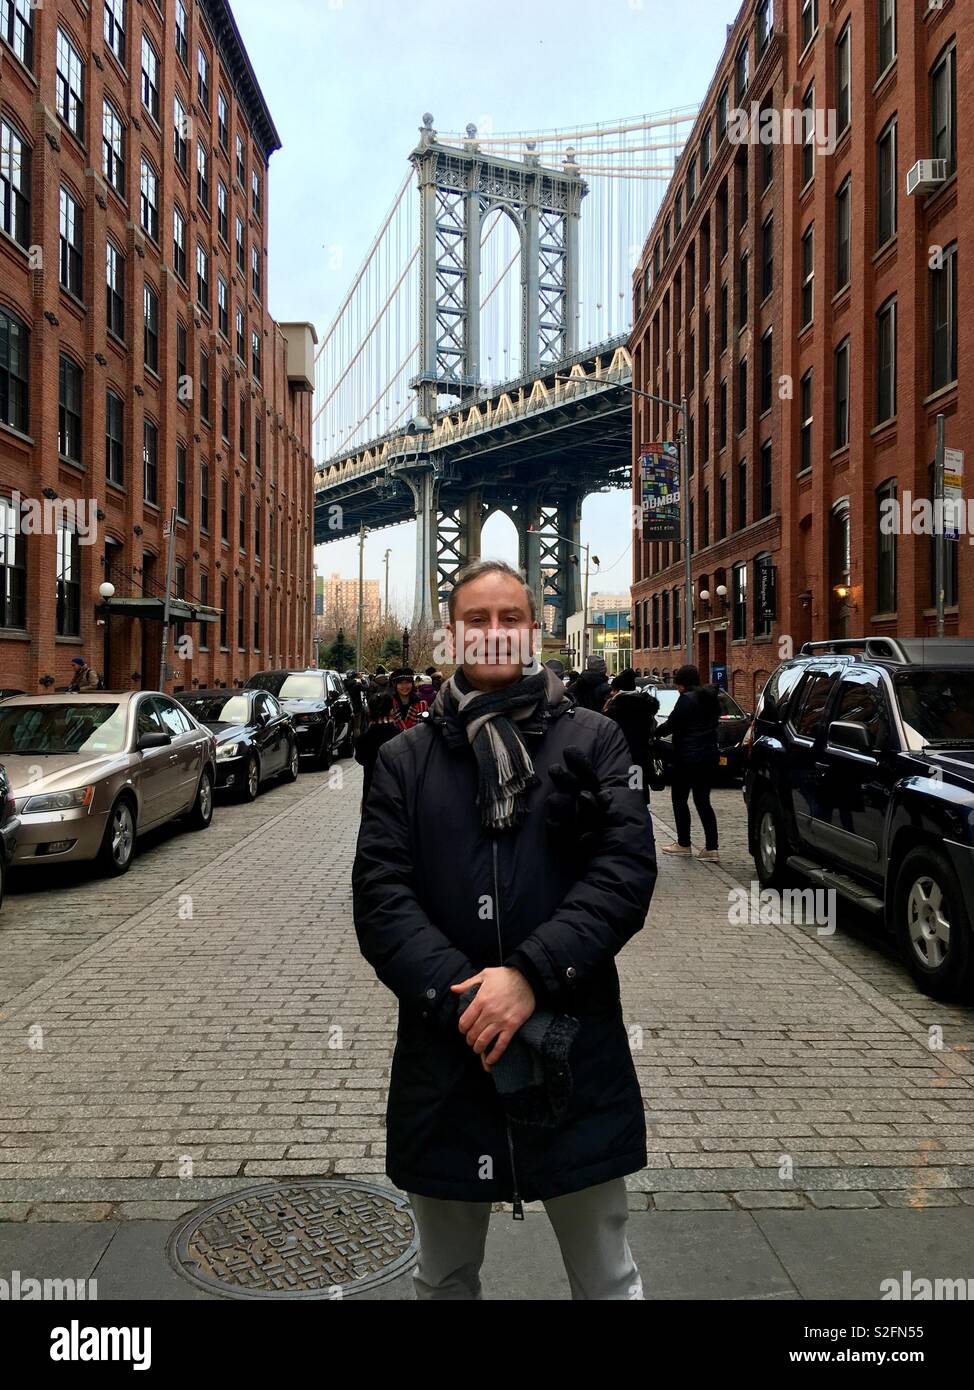 Mann auf der Straße mit Kopfsteinpflaster an DUMBO (Down Under Manhattan Bridge Überführung), Brooklyn, mit Loft wohnen und Manhattan Bridge im Hintergrund. Stockfoto